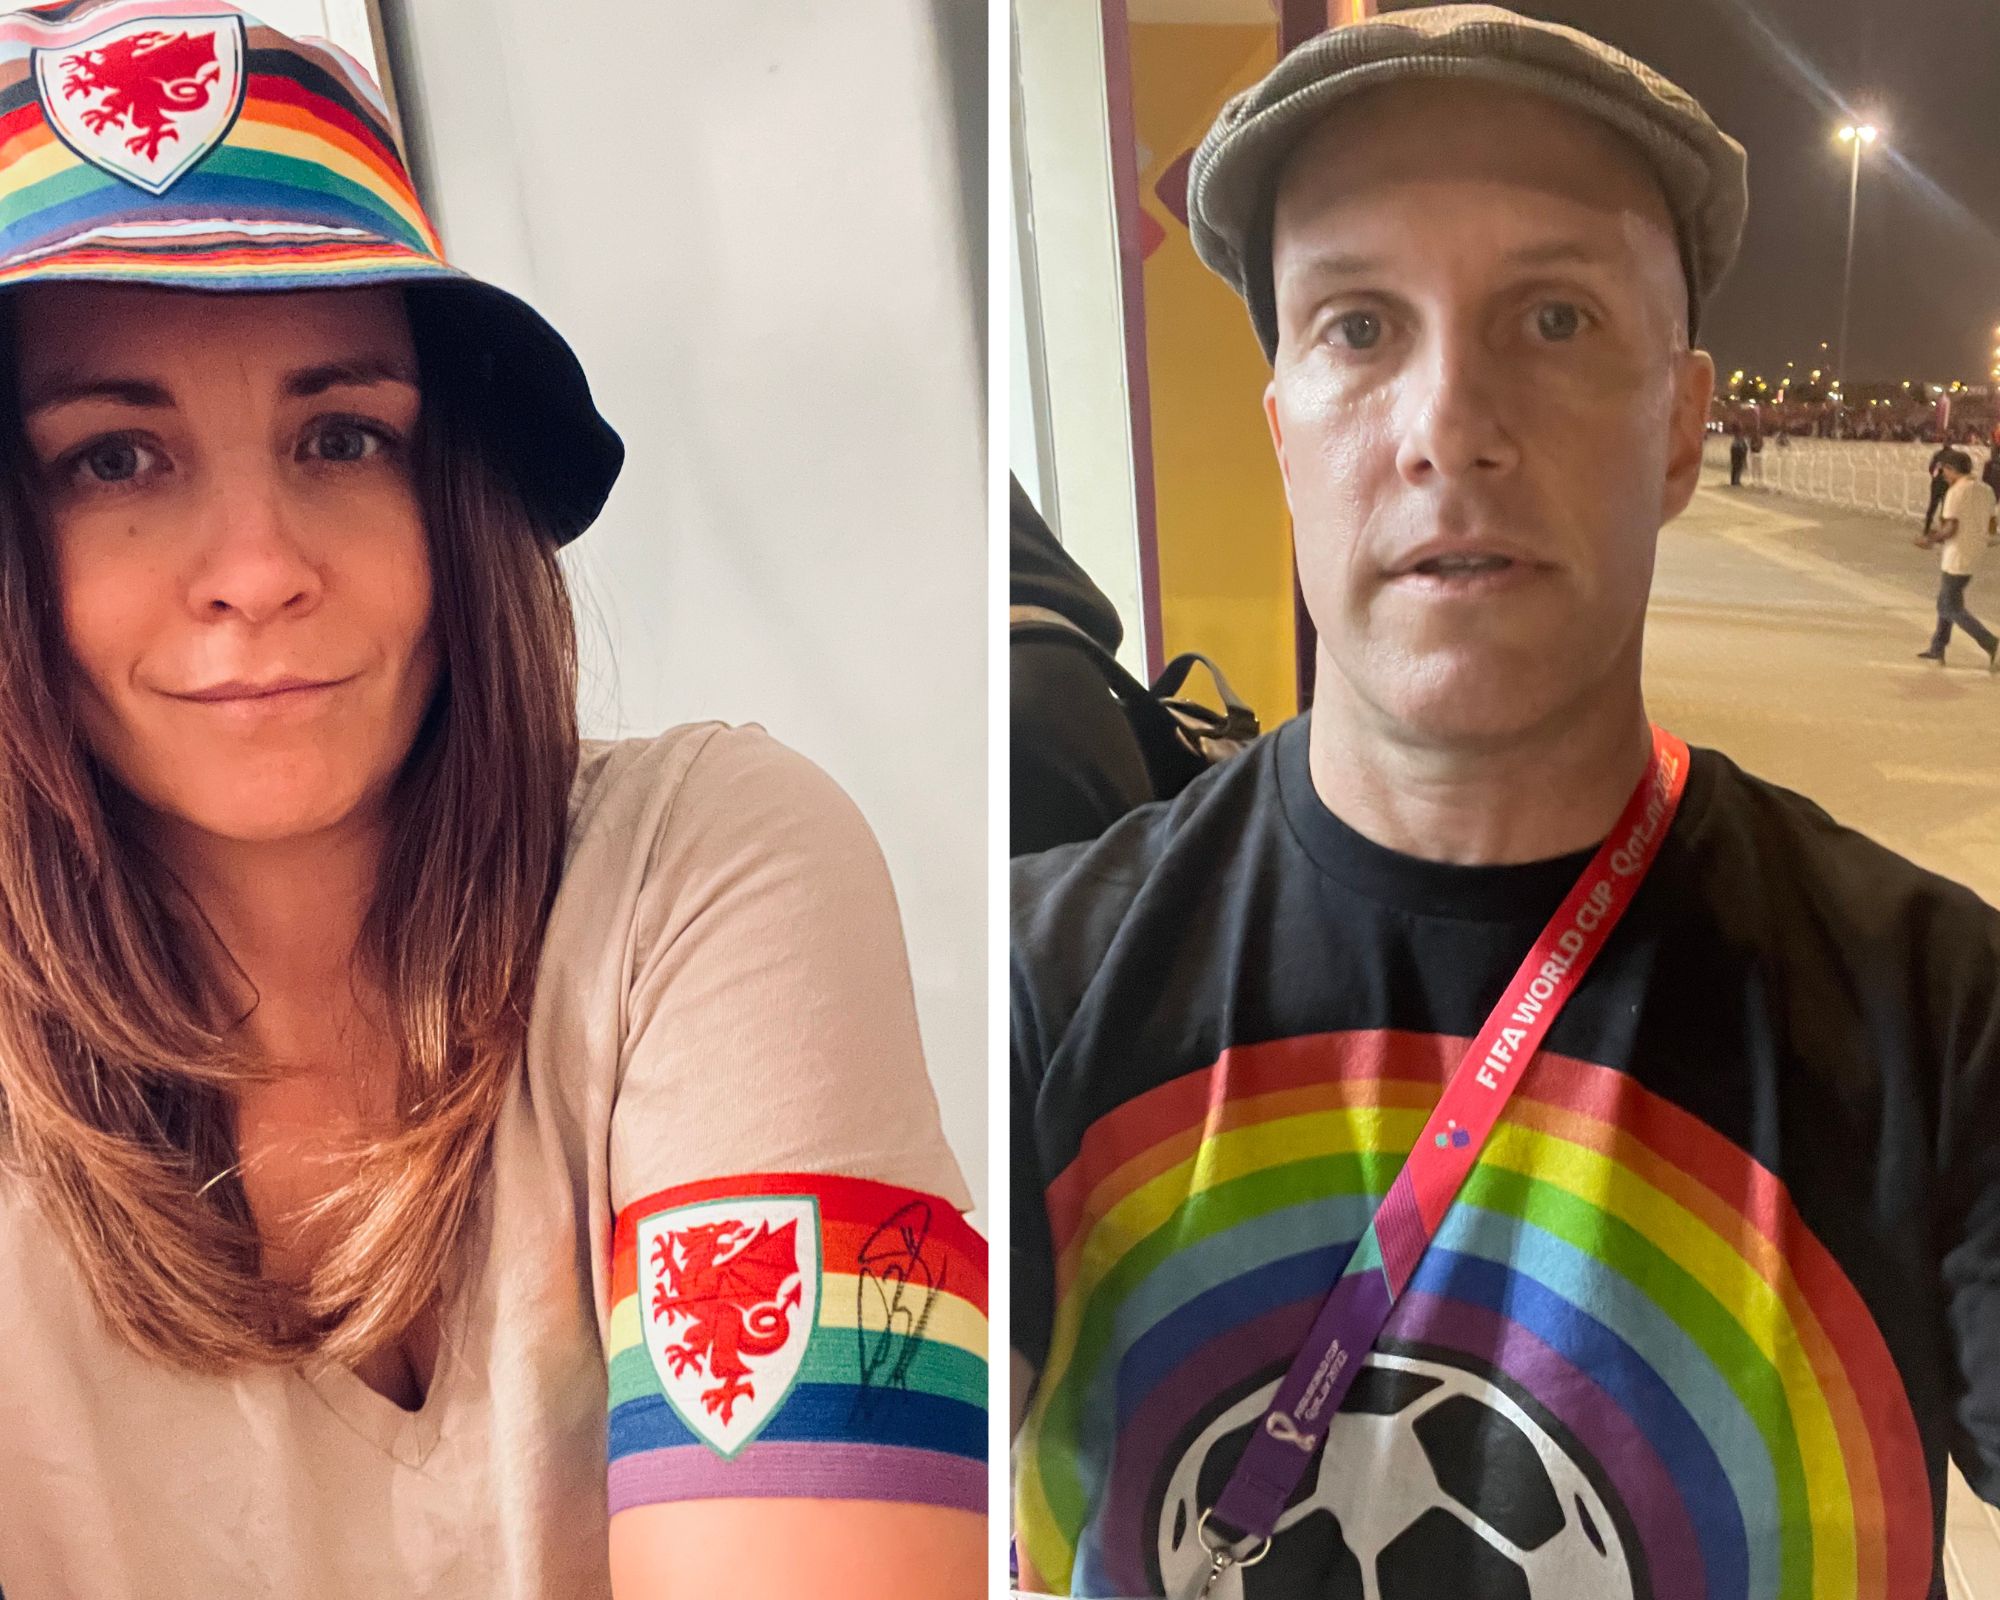 CĐV World Cup bị tịch thu trang phục liên quan đến LGBTQ+ - 1